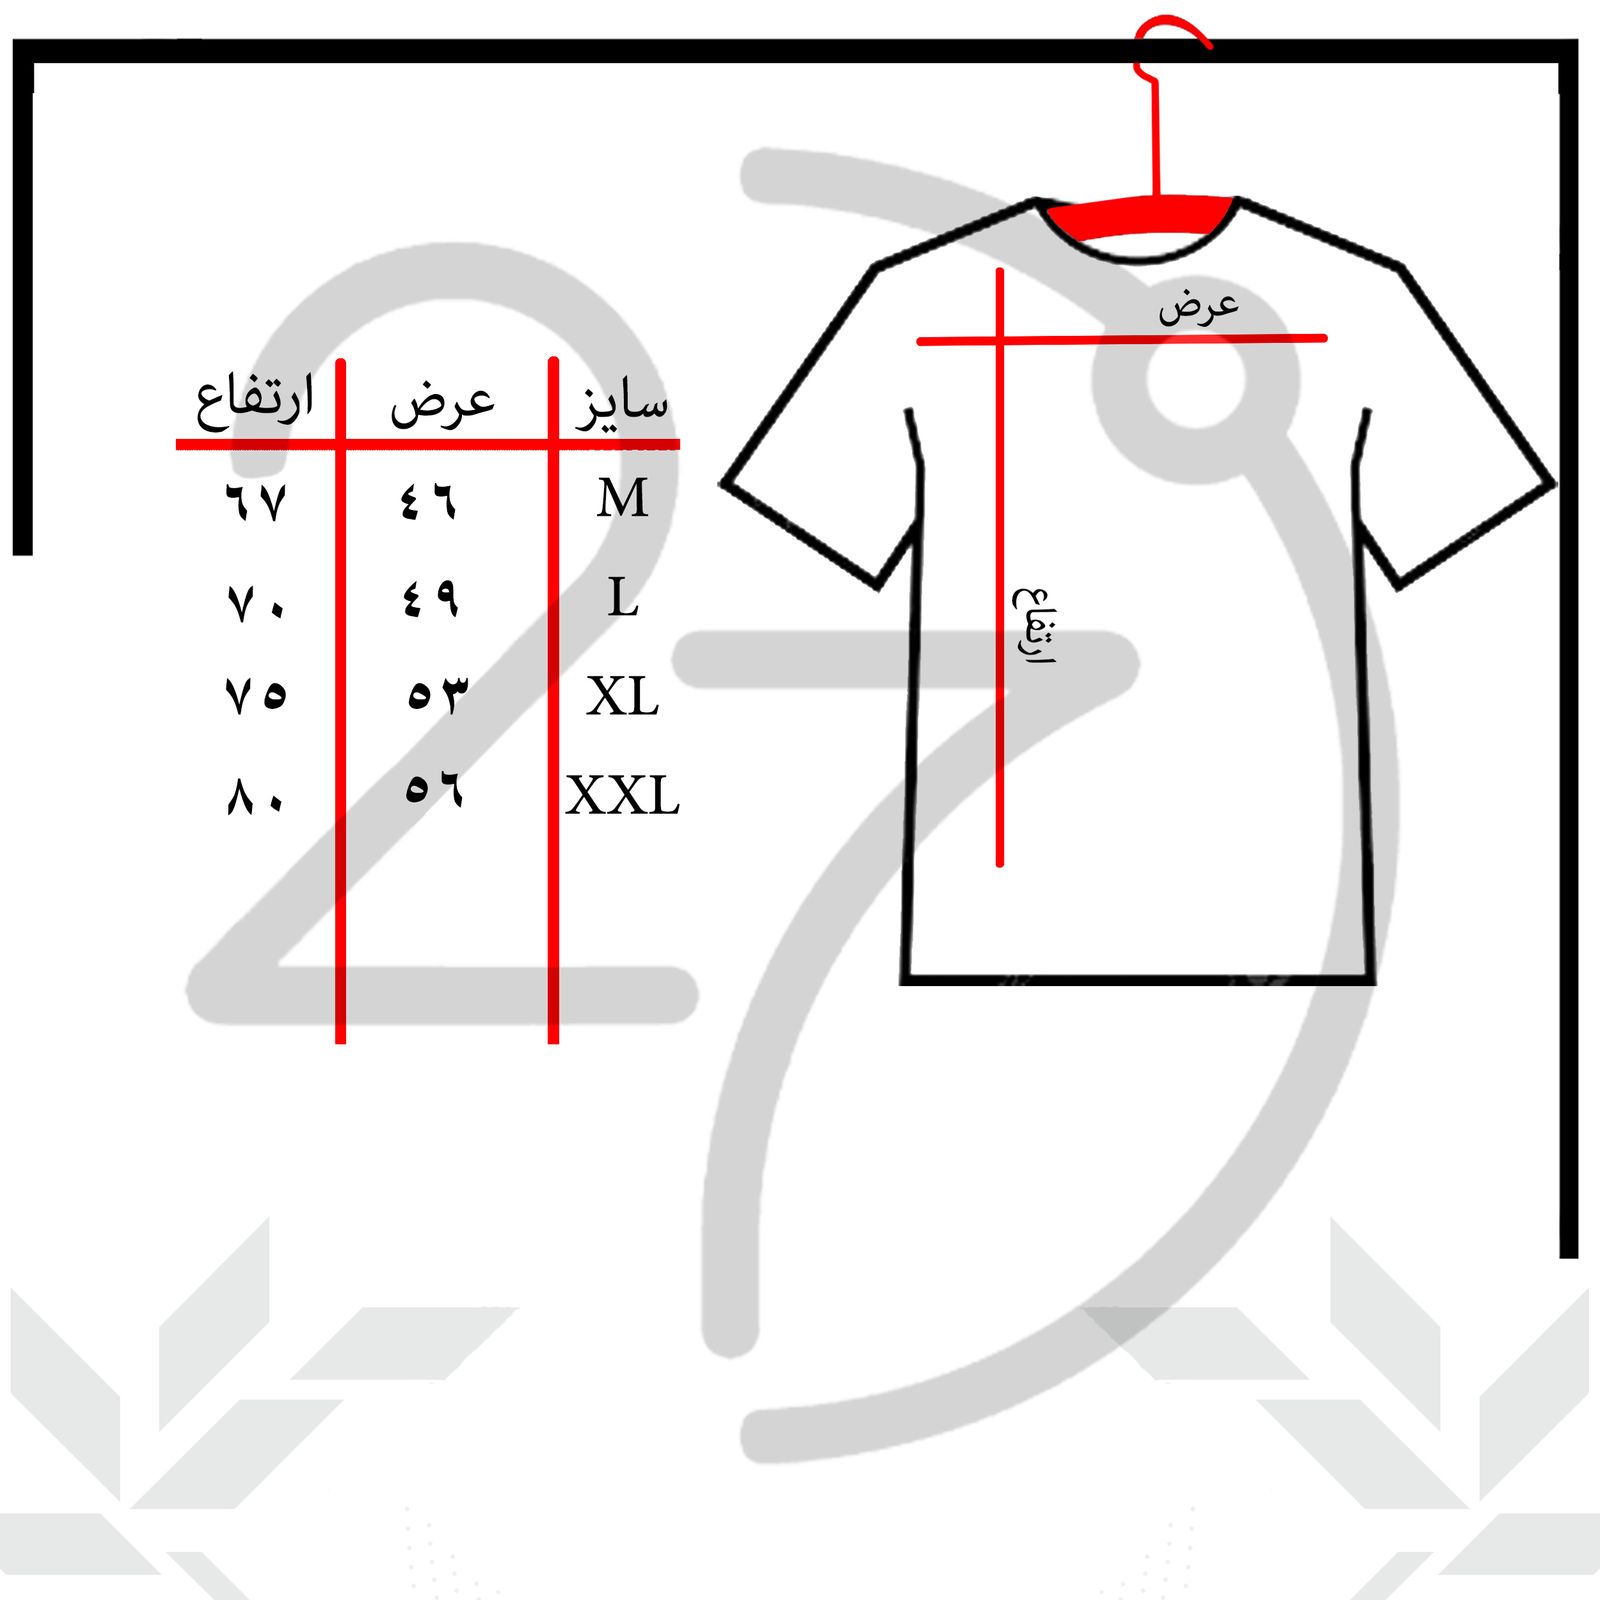 تی شرت آستین کوتاه مردانه 27 مدل دست کد KV230 رنگ سفید -  - 3